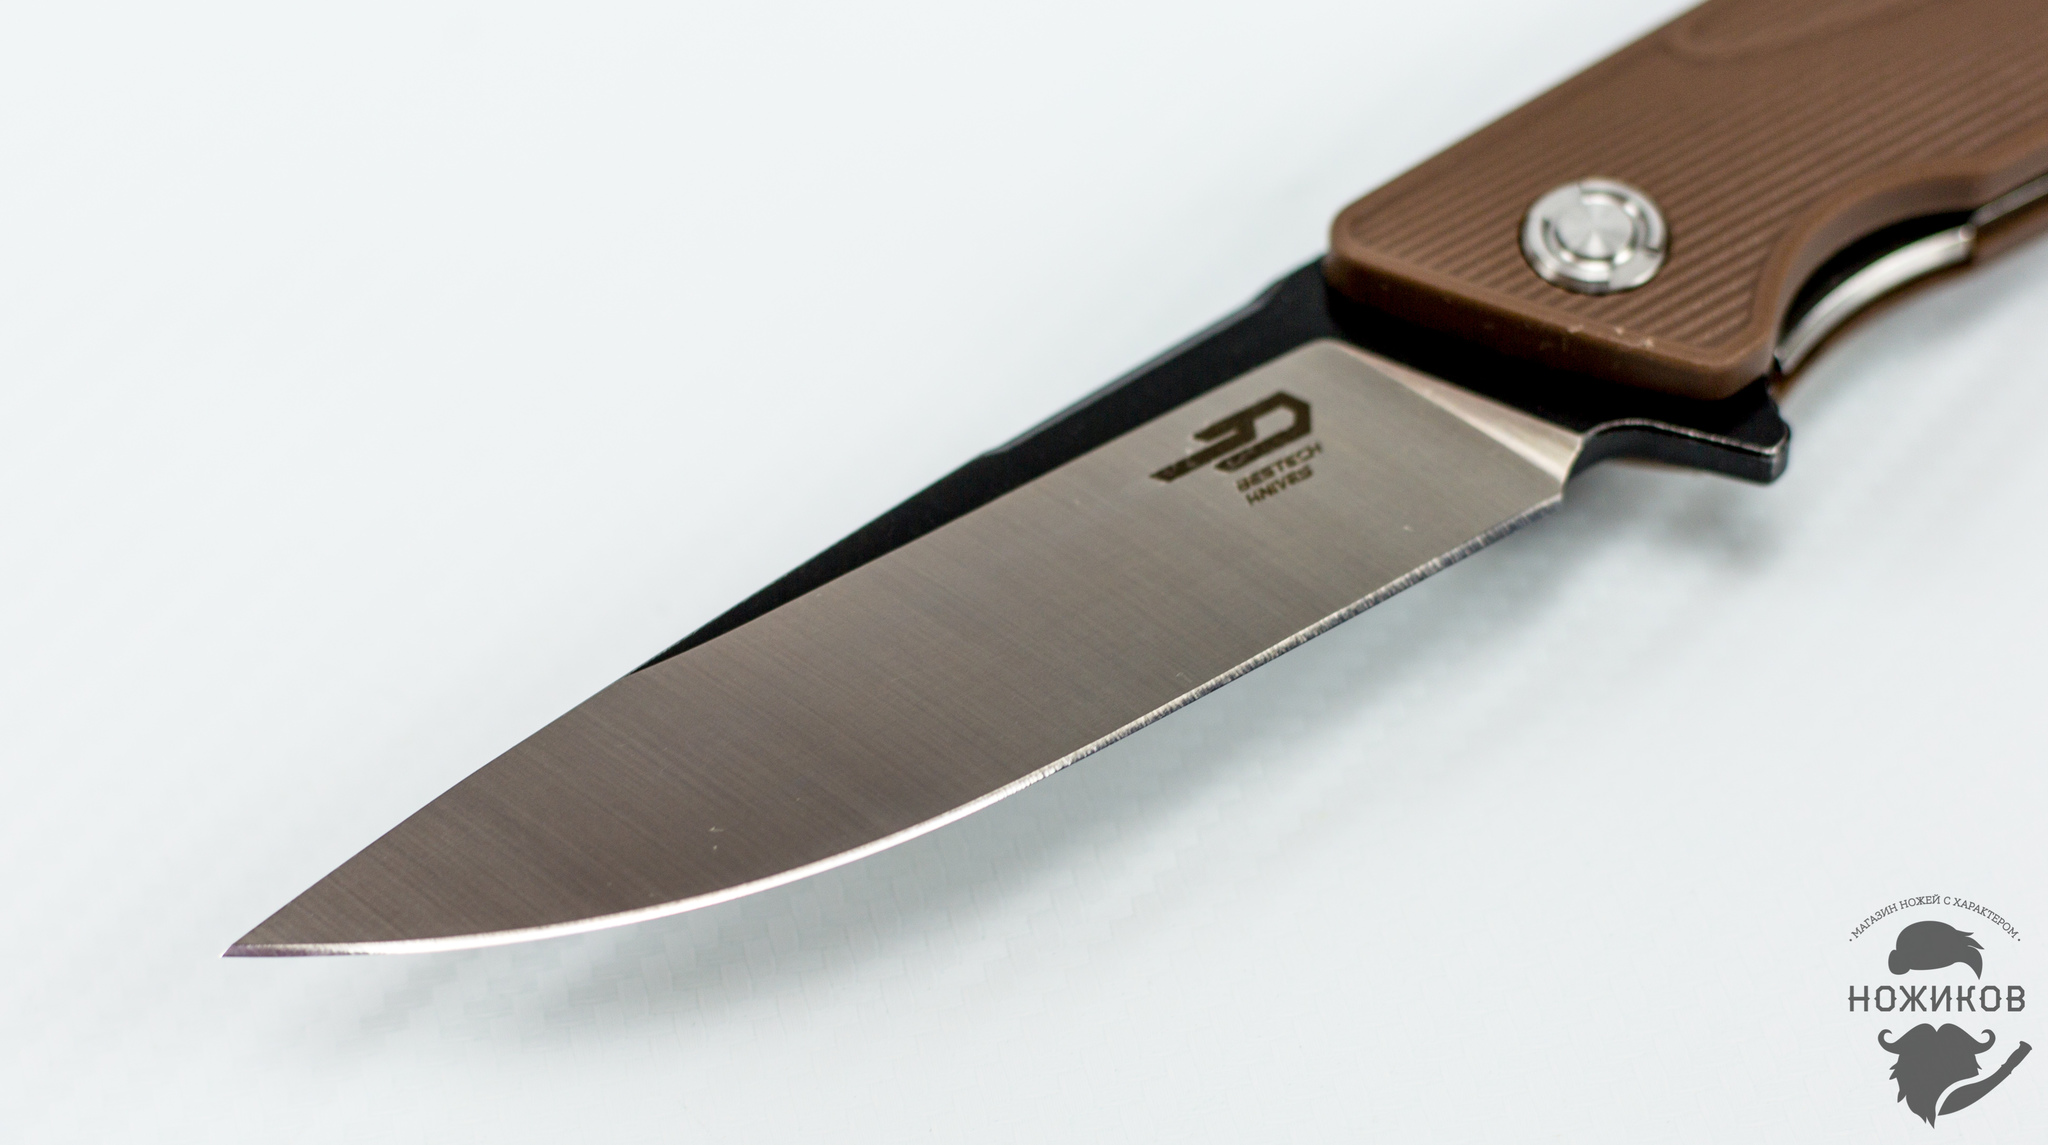 Складной нож Bestech Spike BG09C-1, сталь Sandvik 12C27 от Ножиков